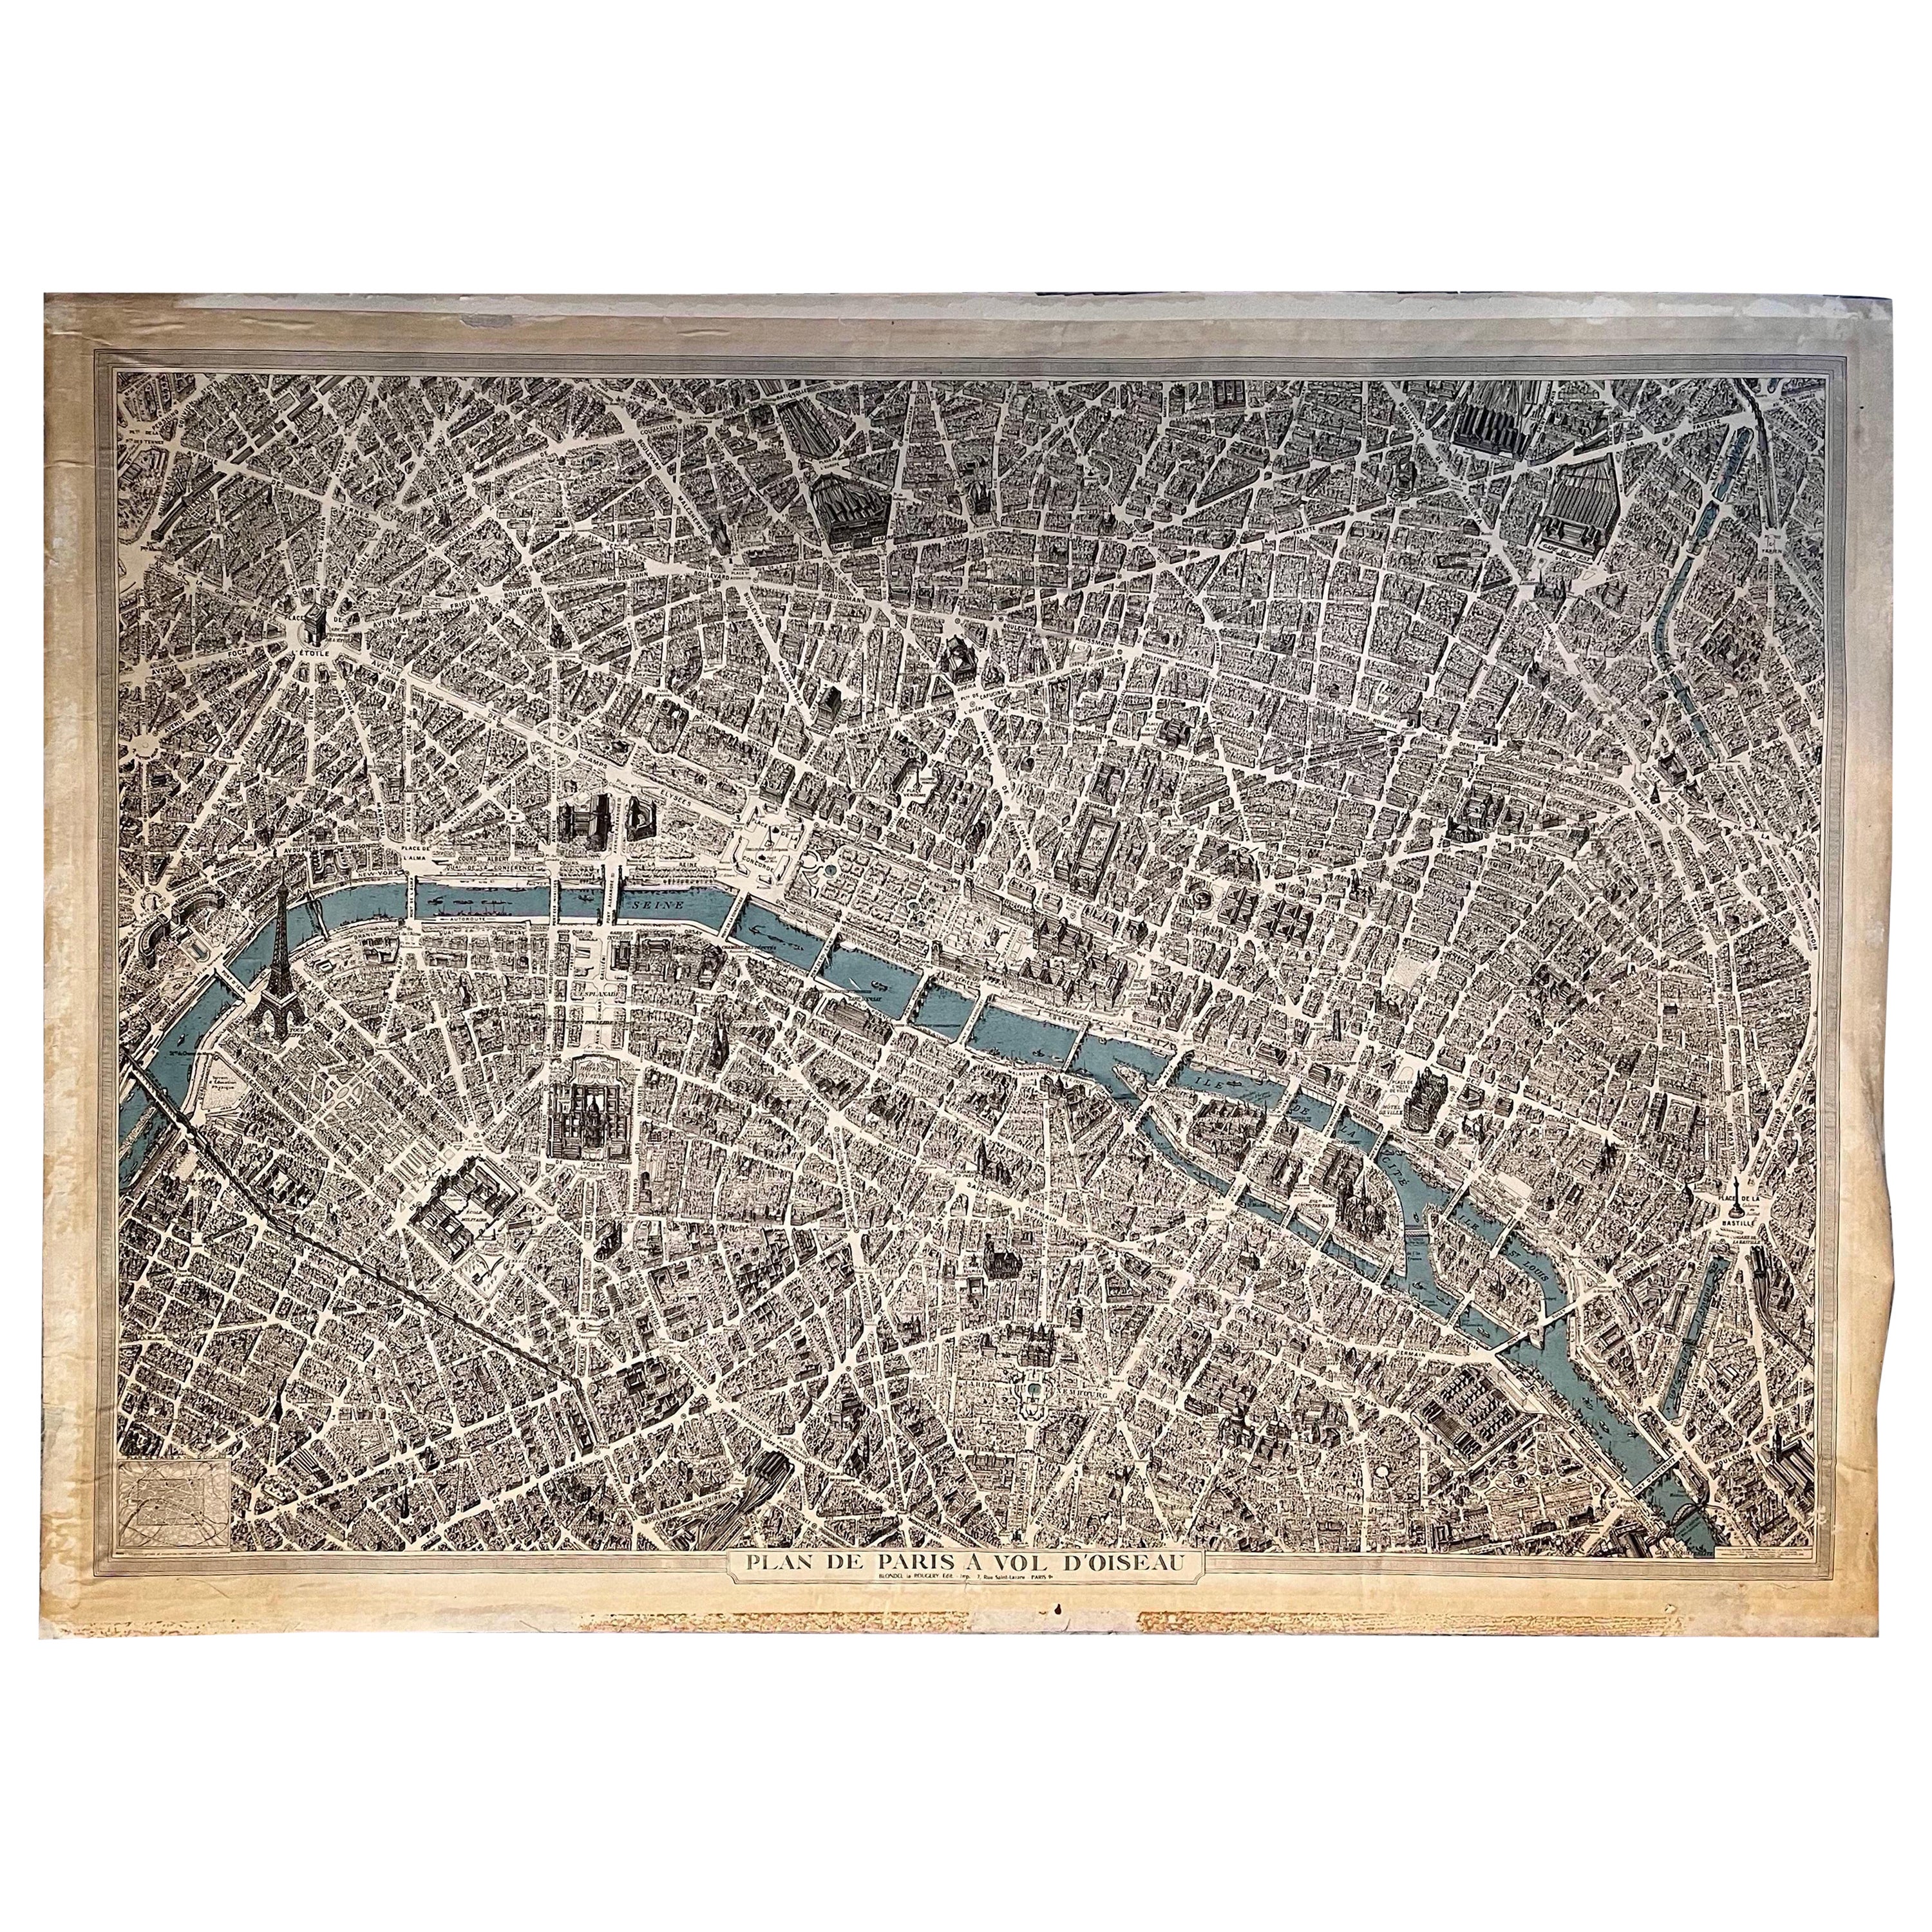 Vintage Map of Paris "Plan De Paris A Vol. D'Oiseau" by Blondel la Rougery, 1959